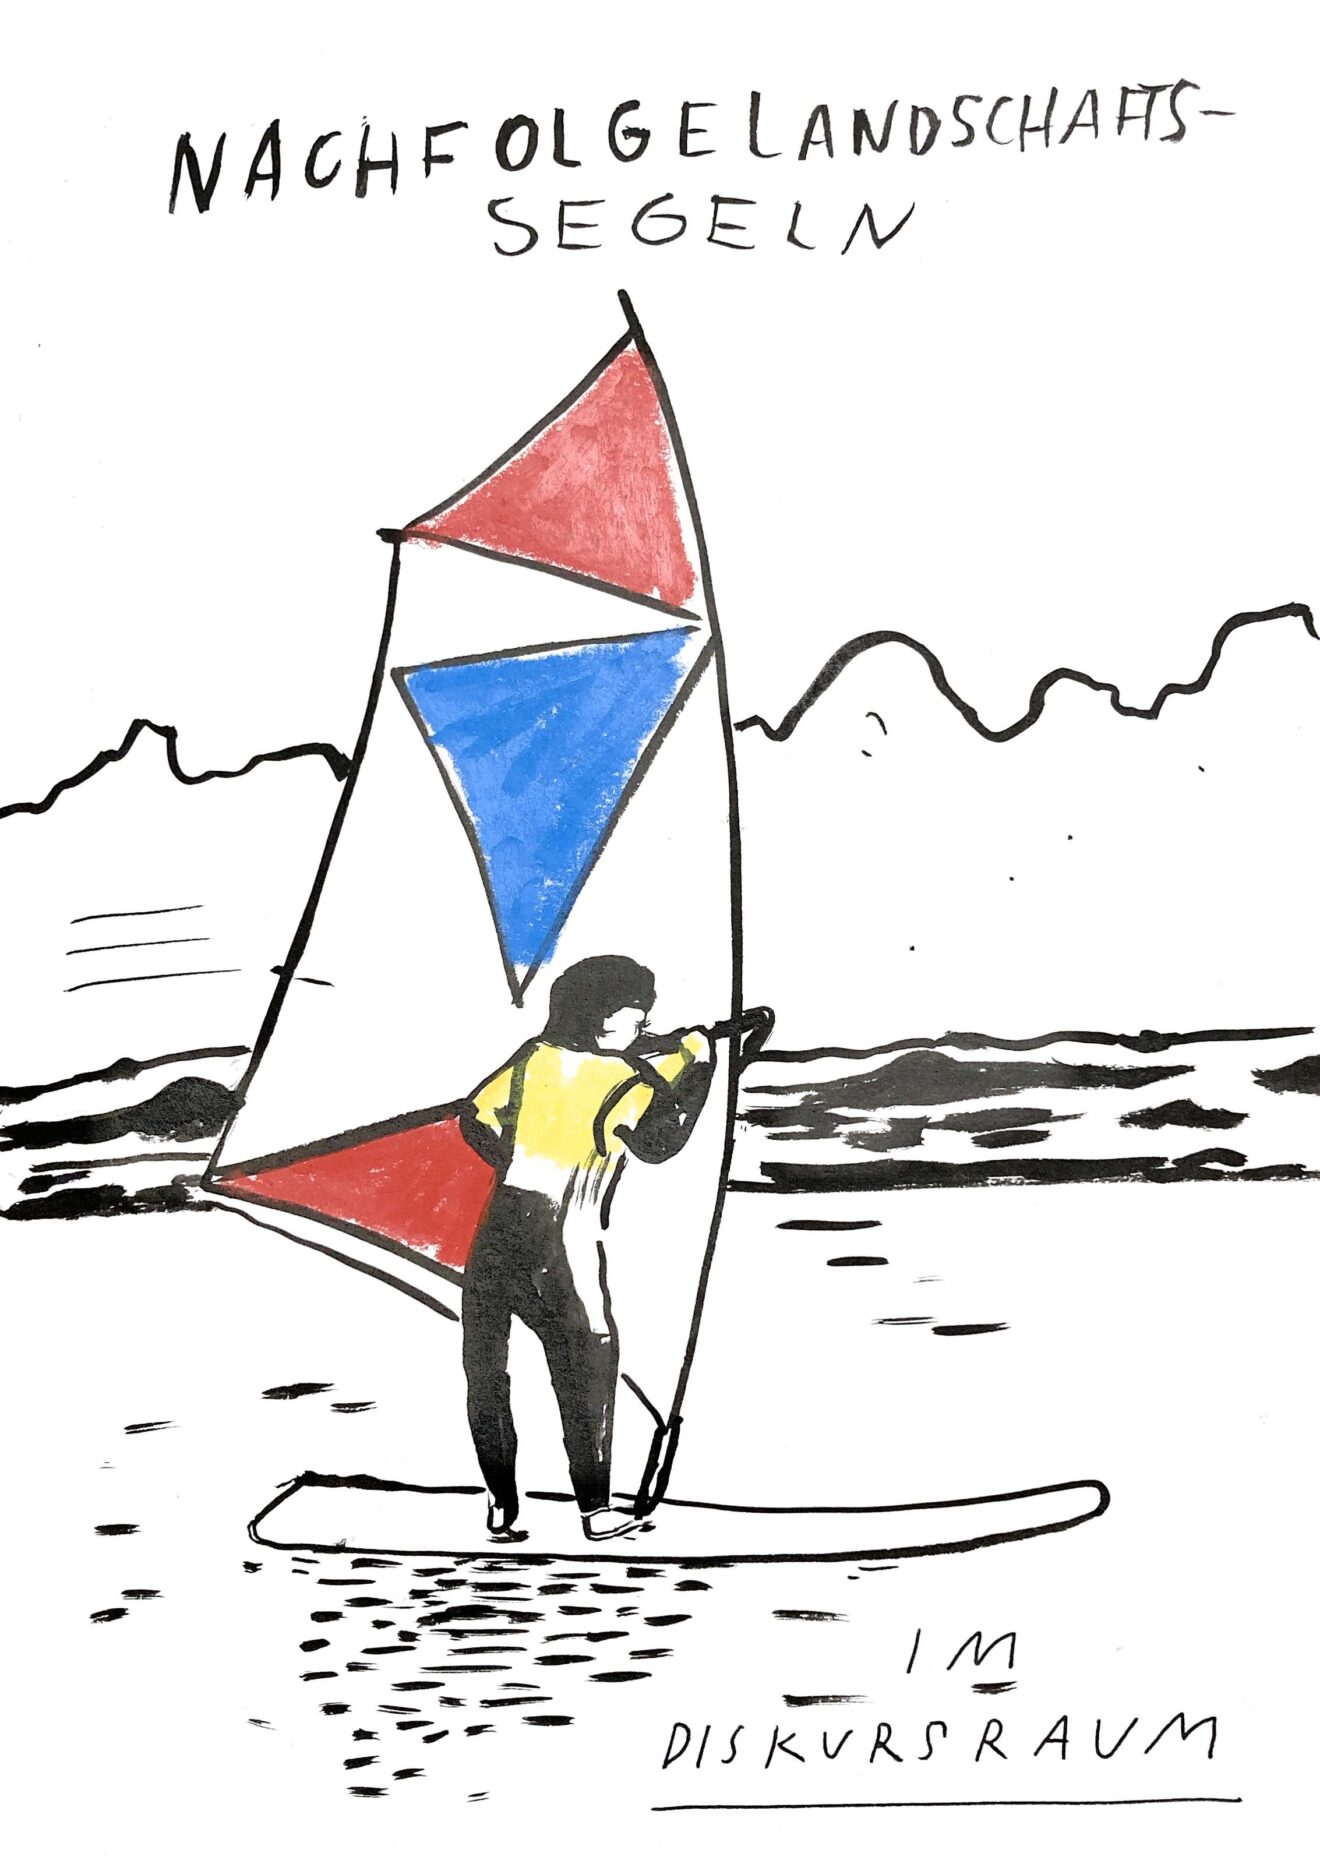 Illustration: Mann auf Segel, darüber Überschrift "Nachfolgelandschaftssegeln"